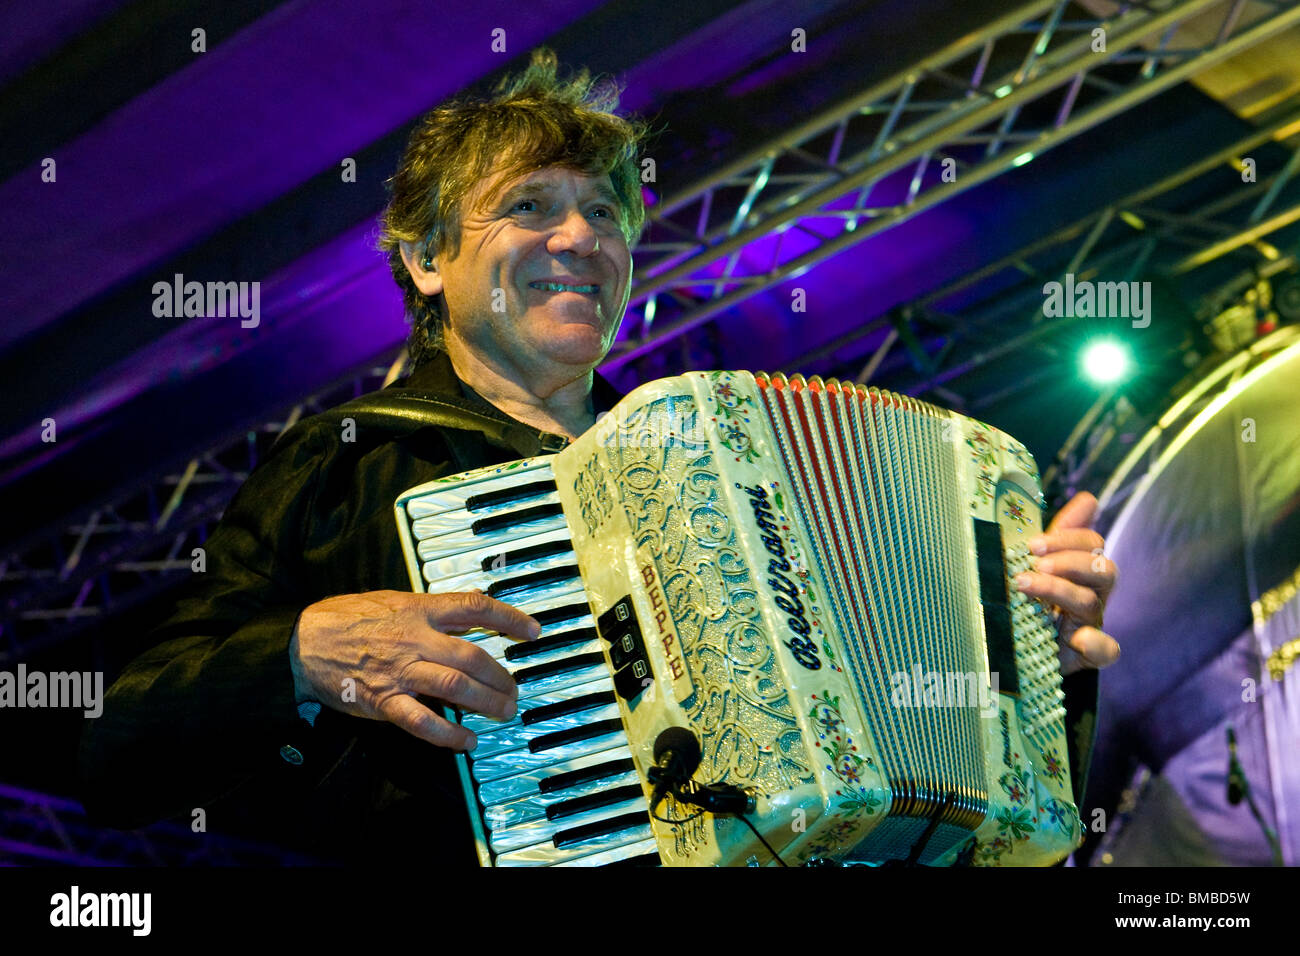 Beppe Carletti, fondatore del gruppo e pianoforte, i nomadi in concerto a Crescentino, provincia di Vercelli, Italia, 28.05.2010 Foto Stock